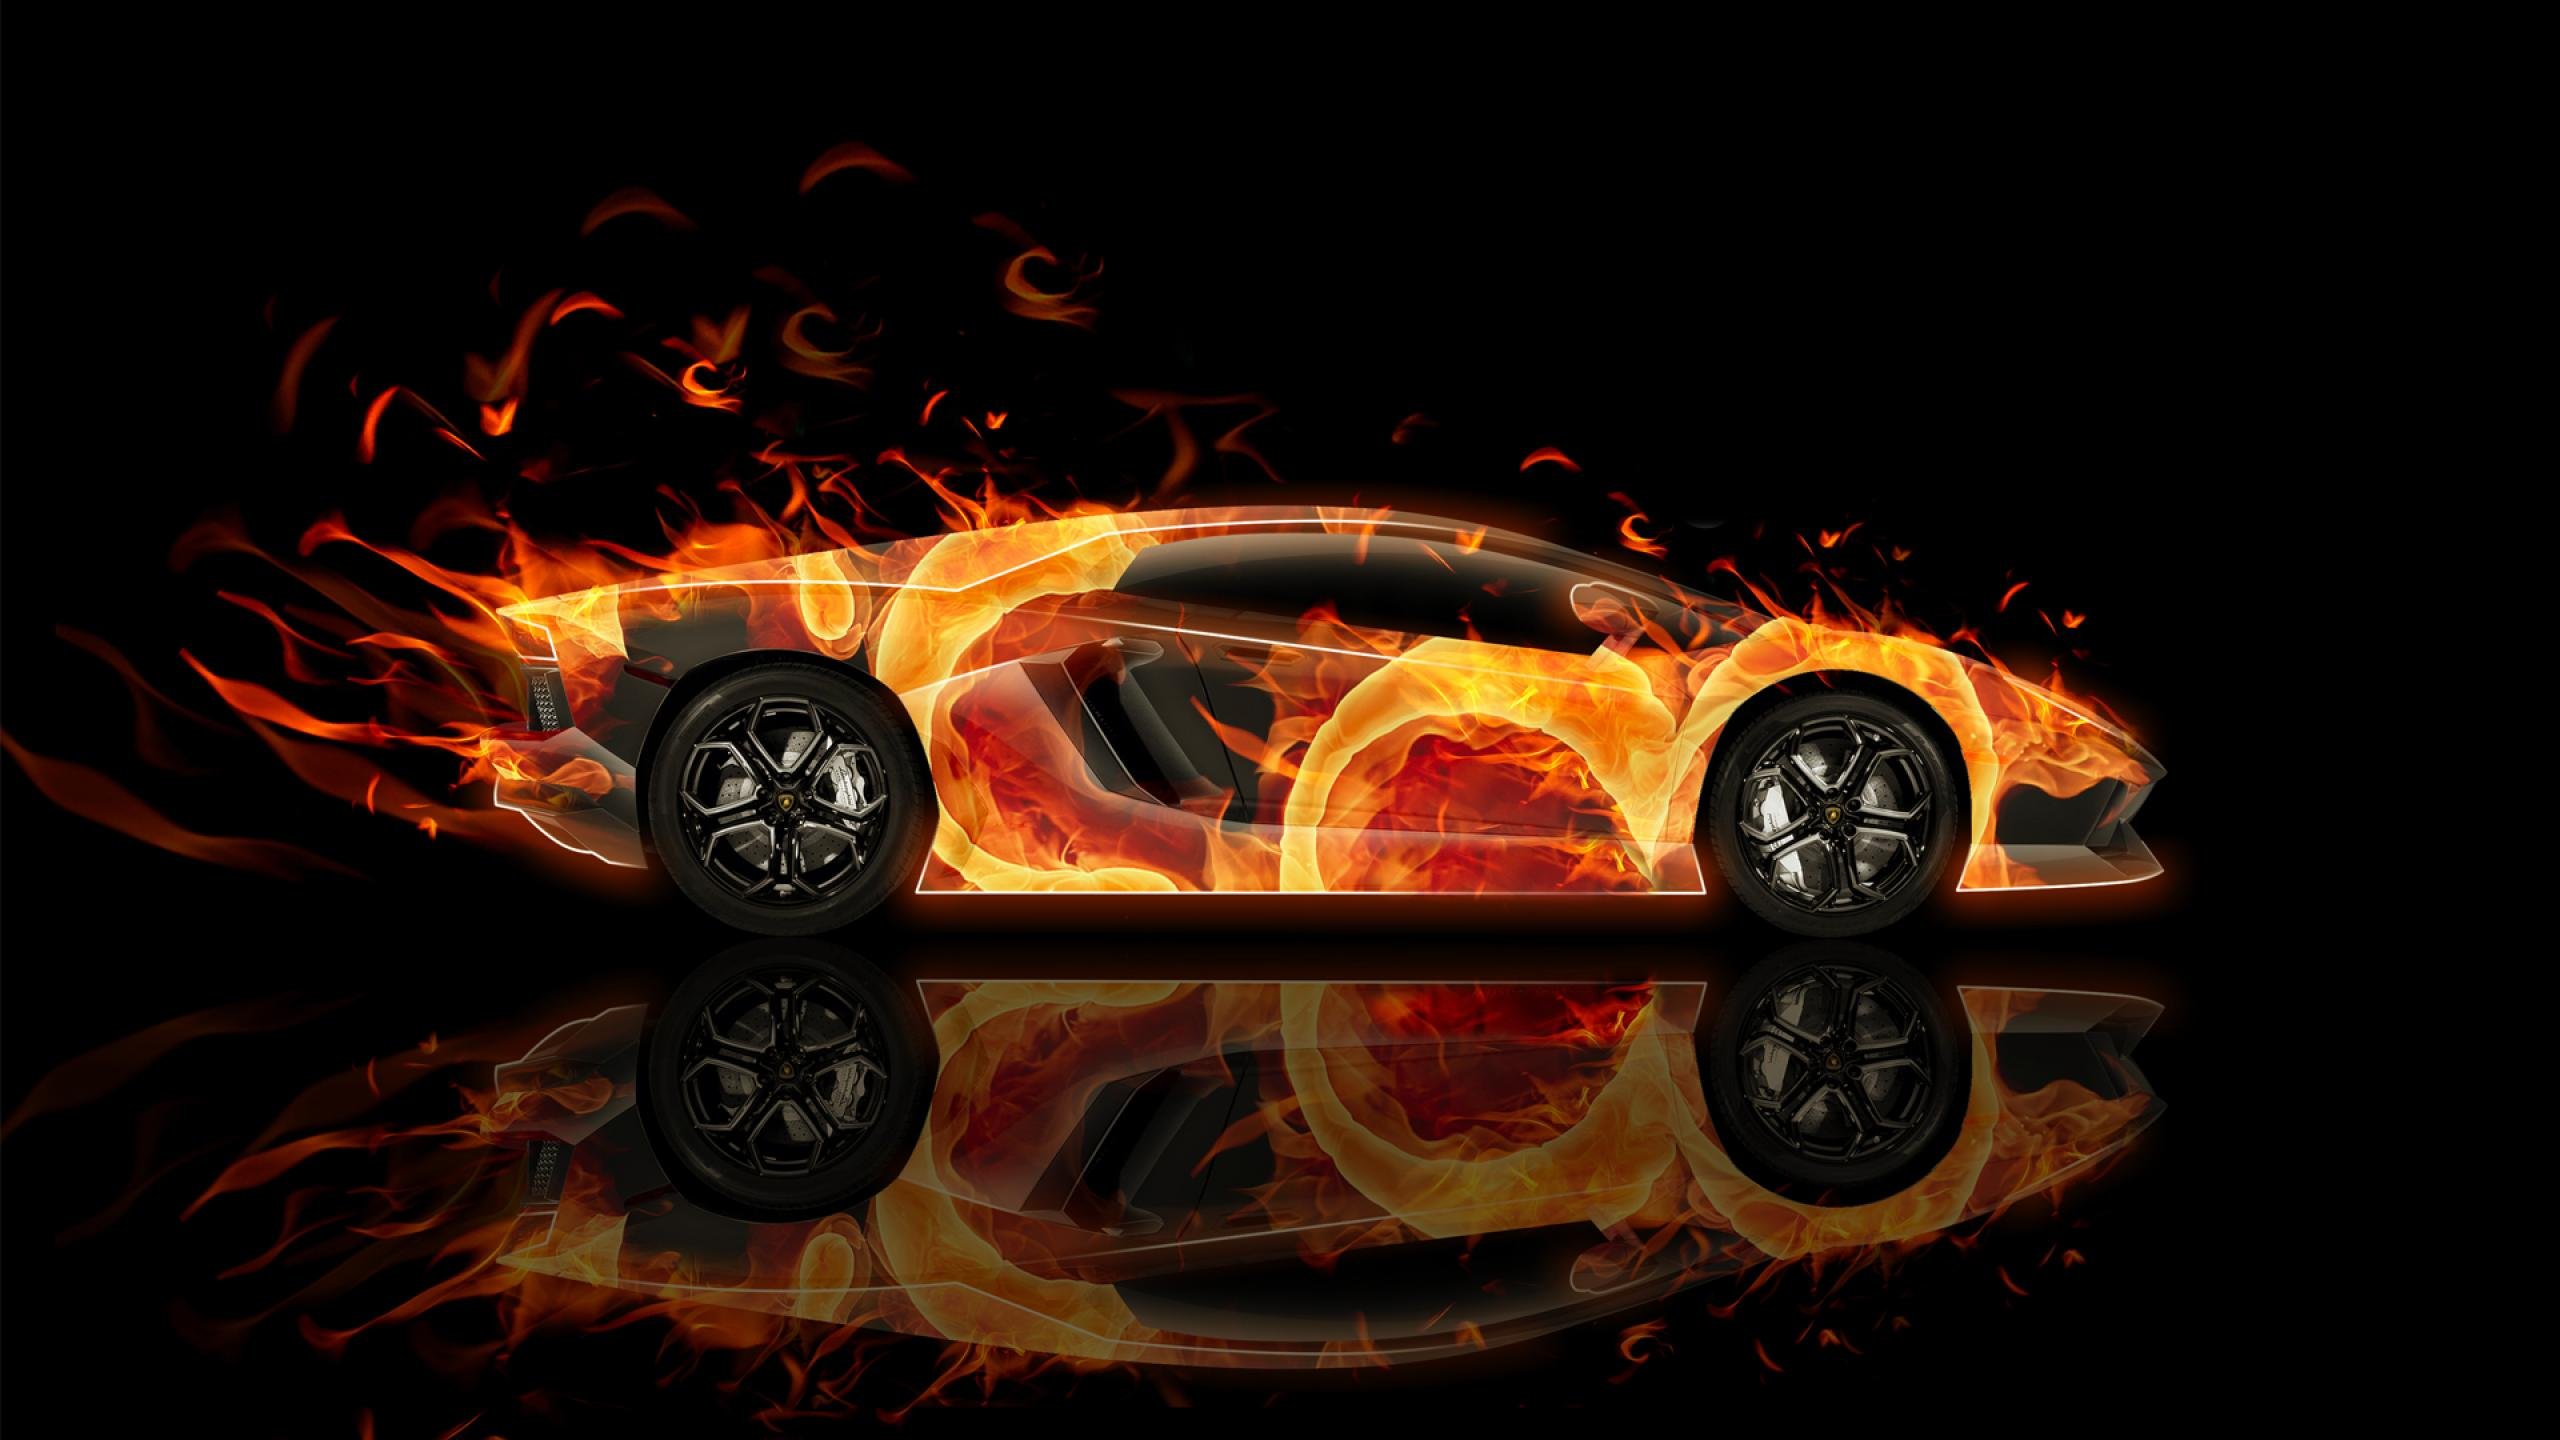 Aventador là một trong những mẫu siêu xe cực kỳ nổi tiếng và được yêu thích nhất của hãng Lamborghini. Những hình ảnh về chiếc xe này sẽ khiến trái tim bạn đập thình thịch vì vẻ đẹp hoàn hảo.